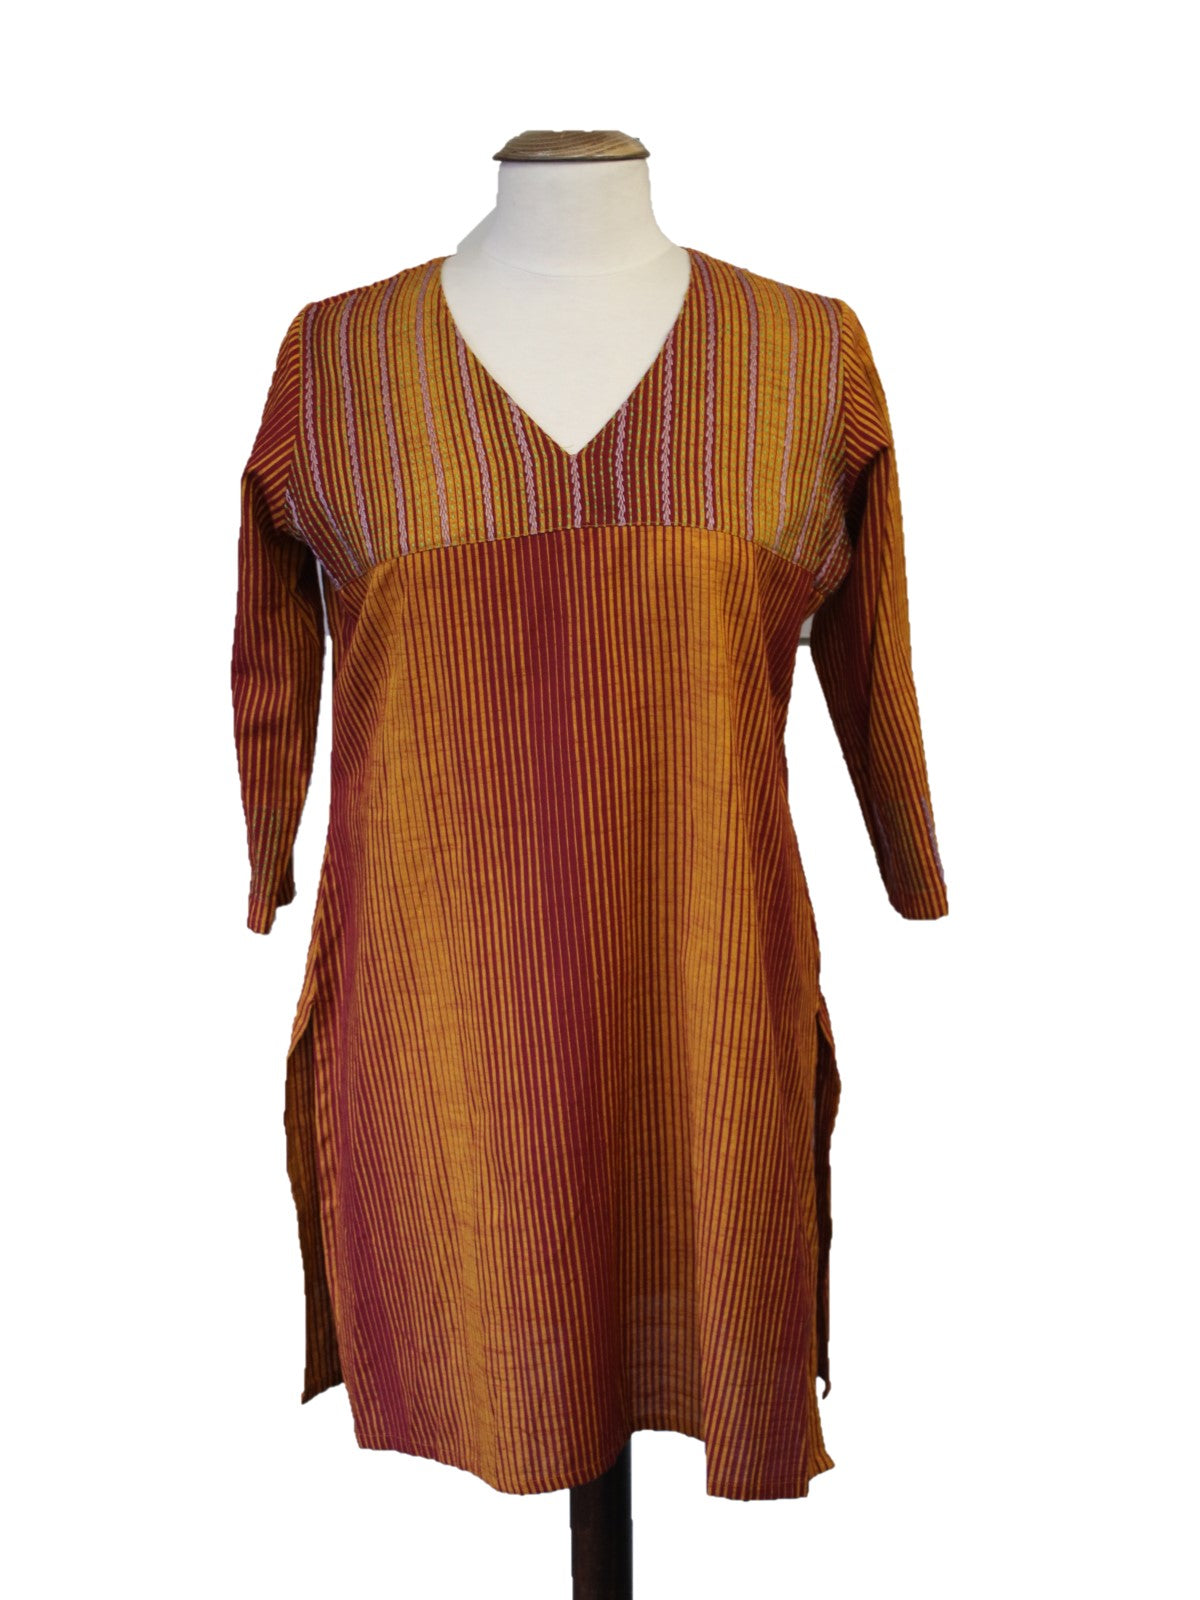 Unifiedclothes Women Fashion Party Indian Kurti Tunic Kurta Top Shirt Dress  SC1030 (UK 20|Bust Size 44